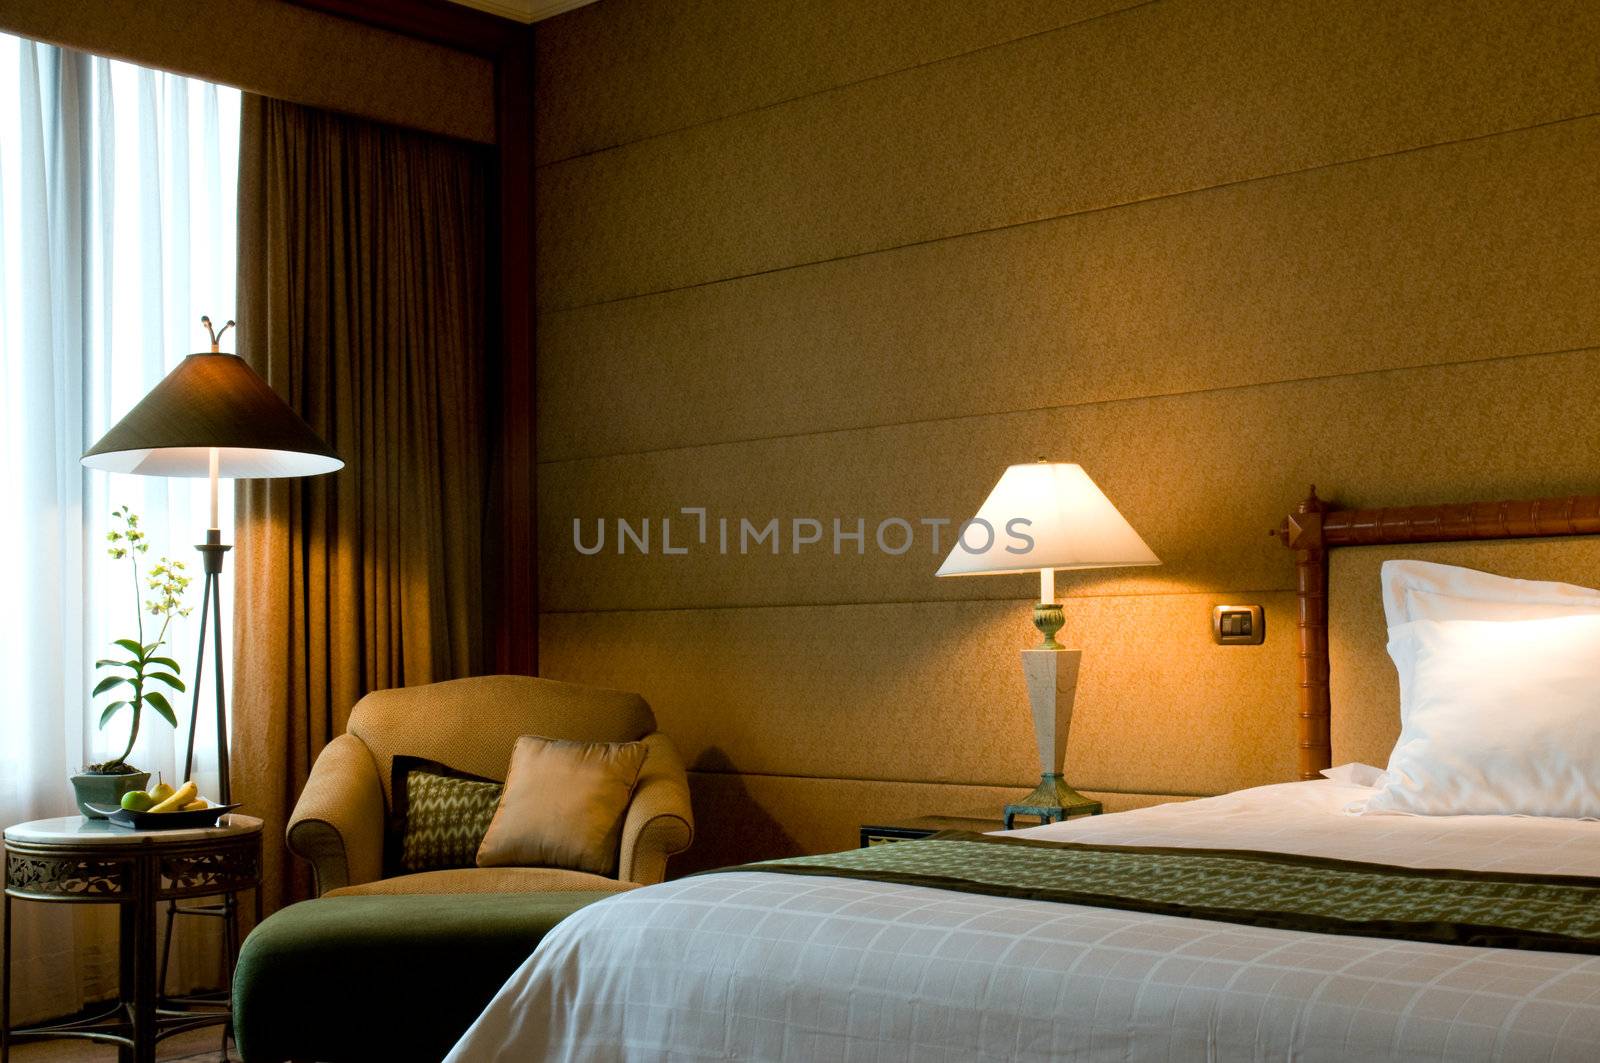 Bedroom of a elegant 5 star luxury hotel suite room 